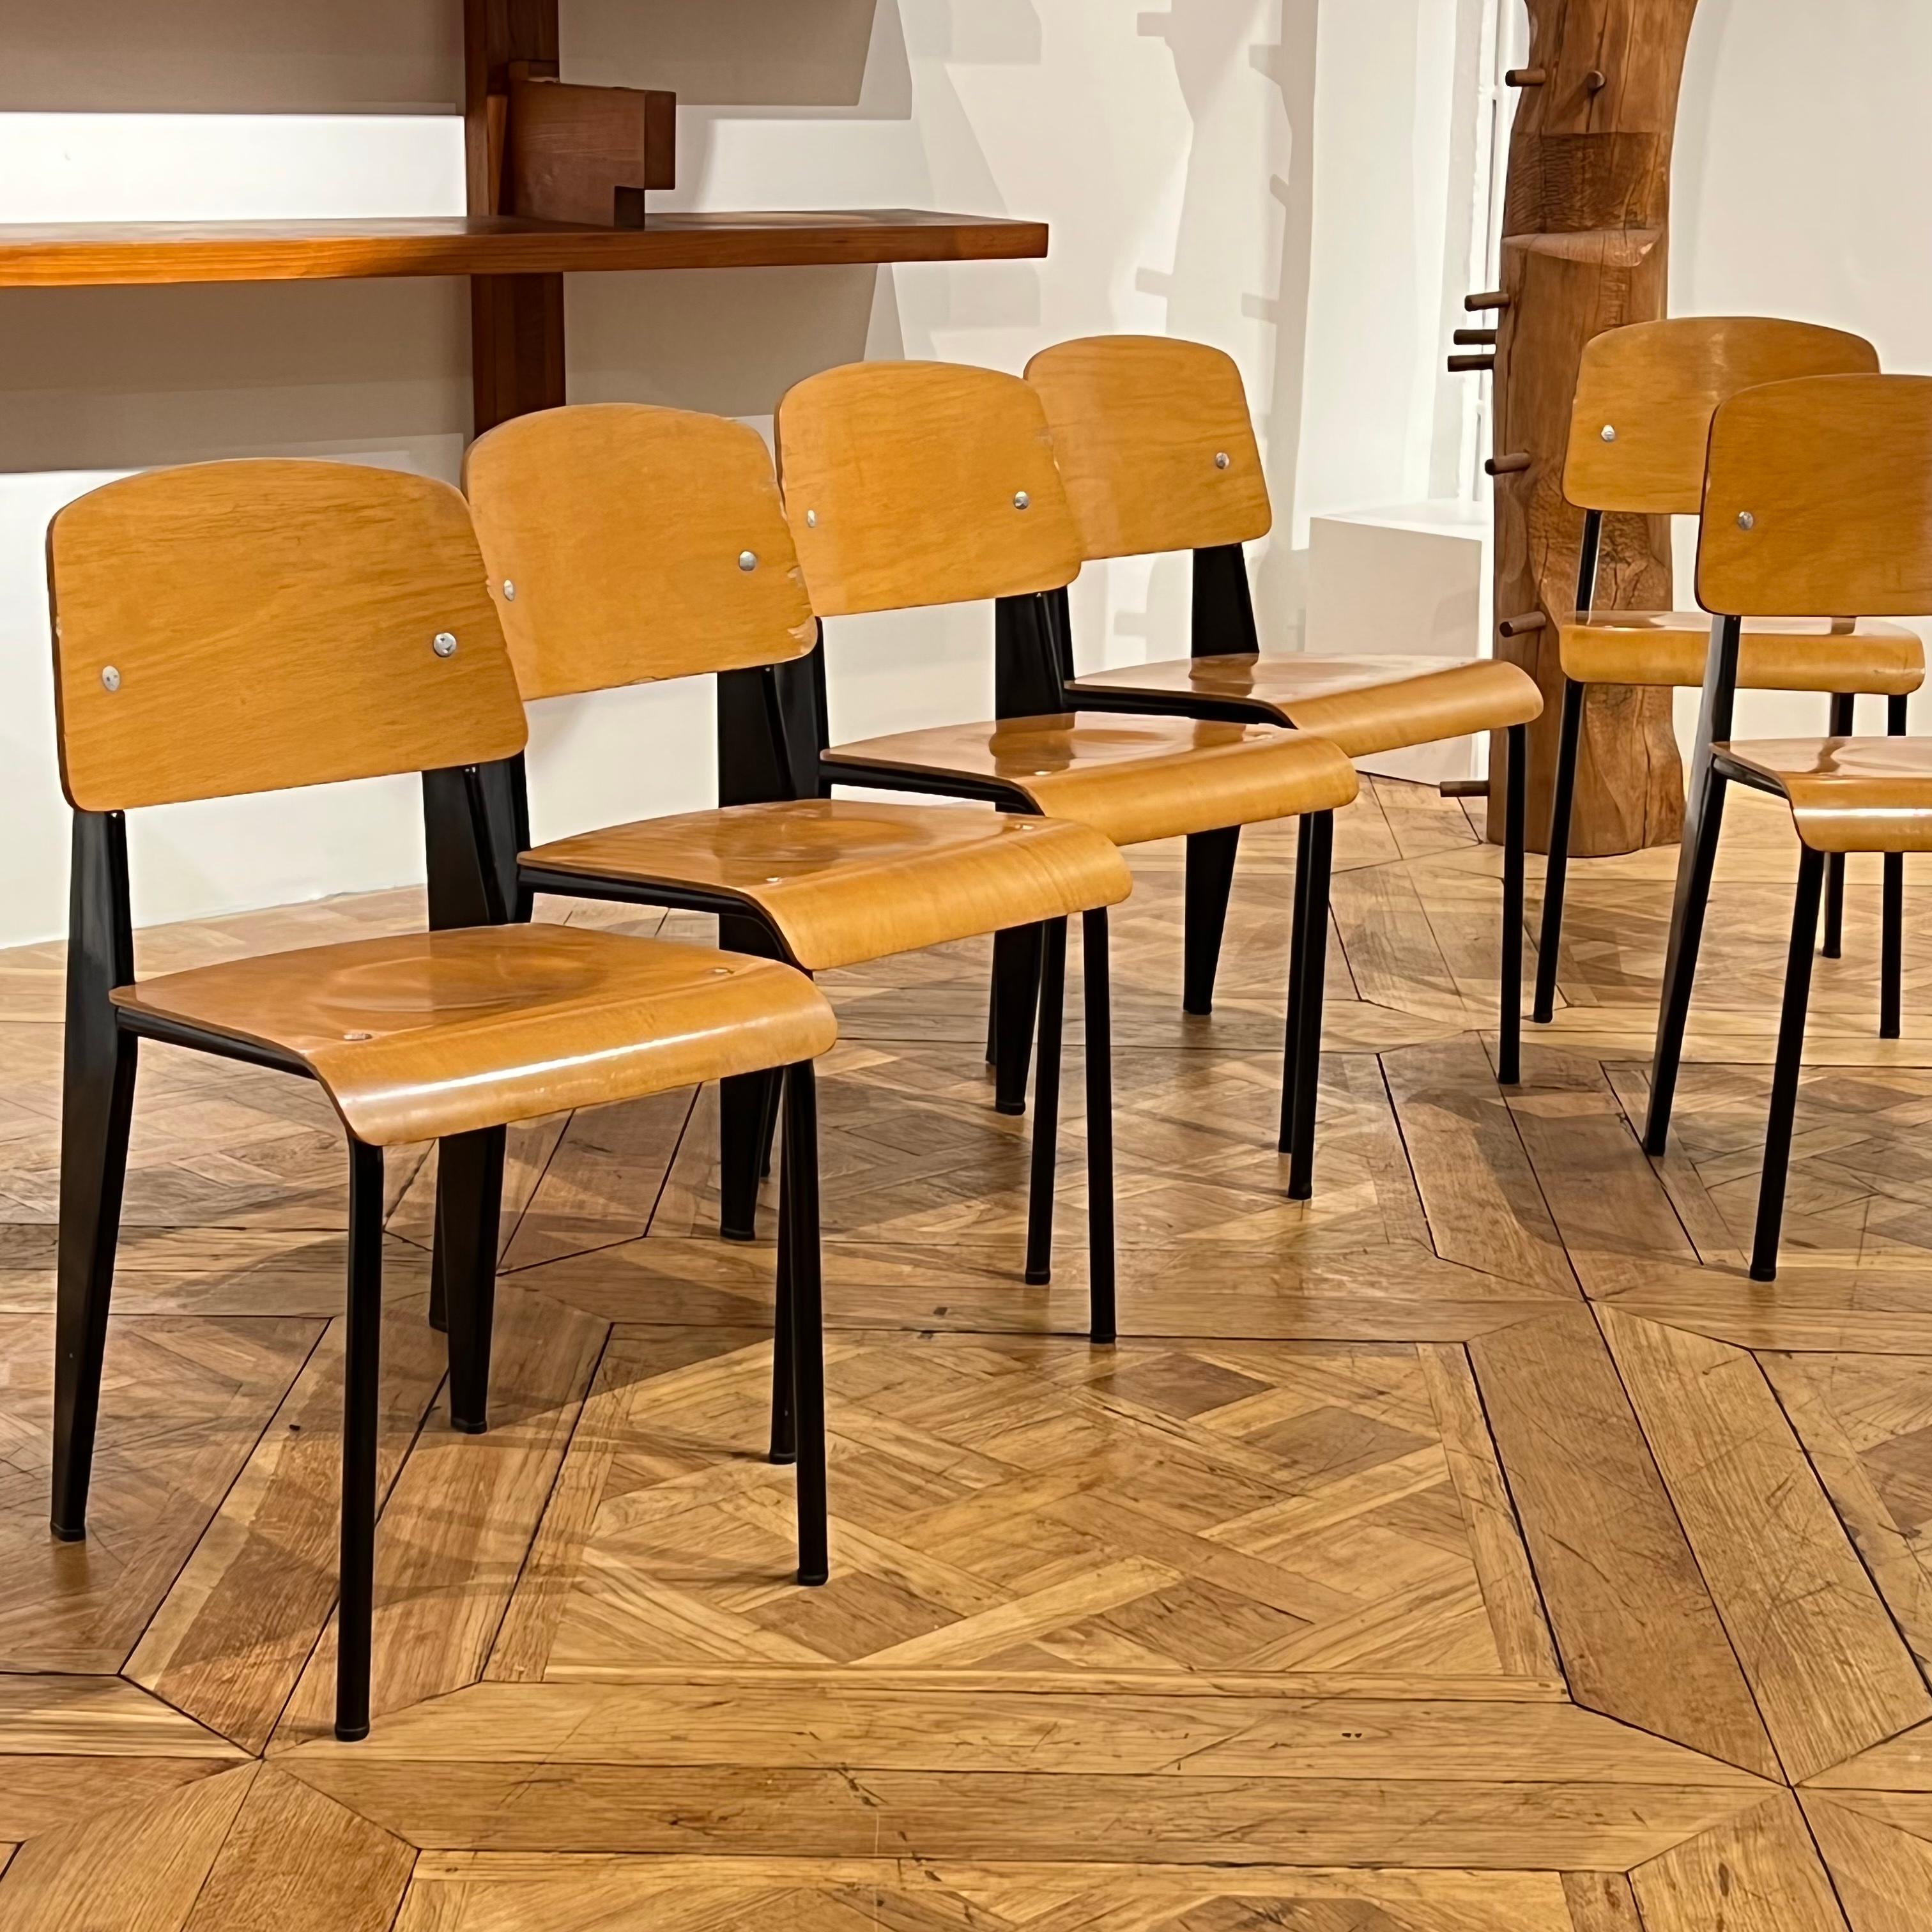 Un très bel ensemble de 6 chaises standard de Jean Prouvé.

Très bon état, 
provenant de la Collectional de l'appartement de Peter Lindbergh à Paris. 

Pièces originales des années 1950.

